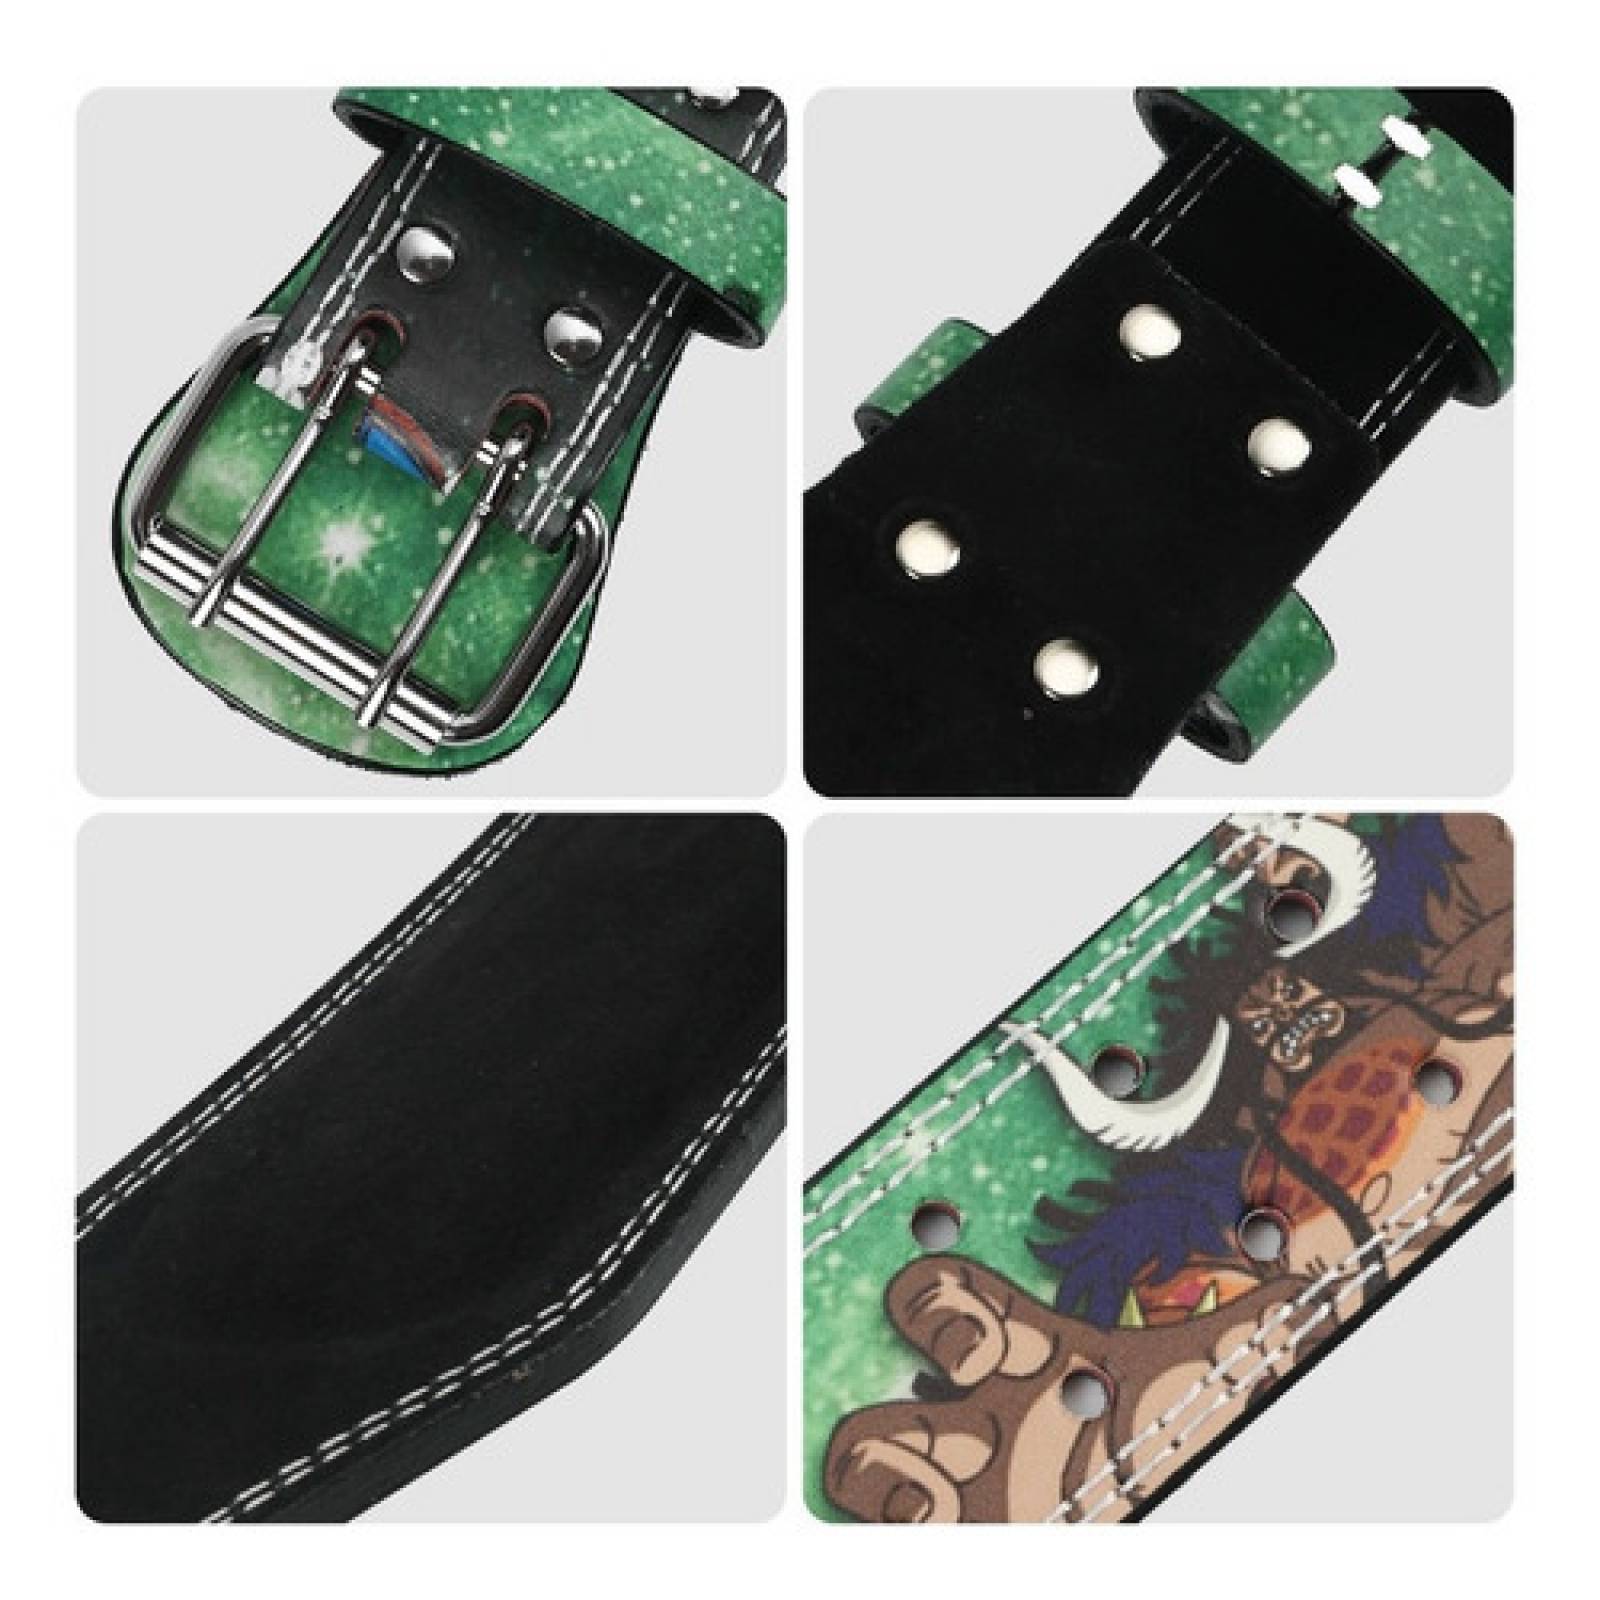 FRESAFIT - Cinturones, fajas y accesorios para GYM